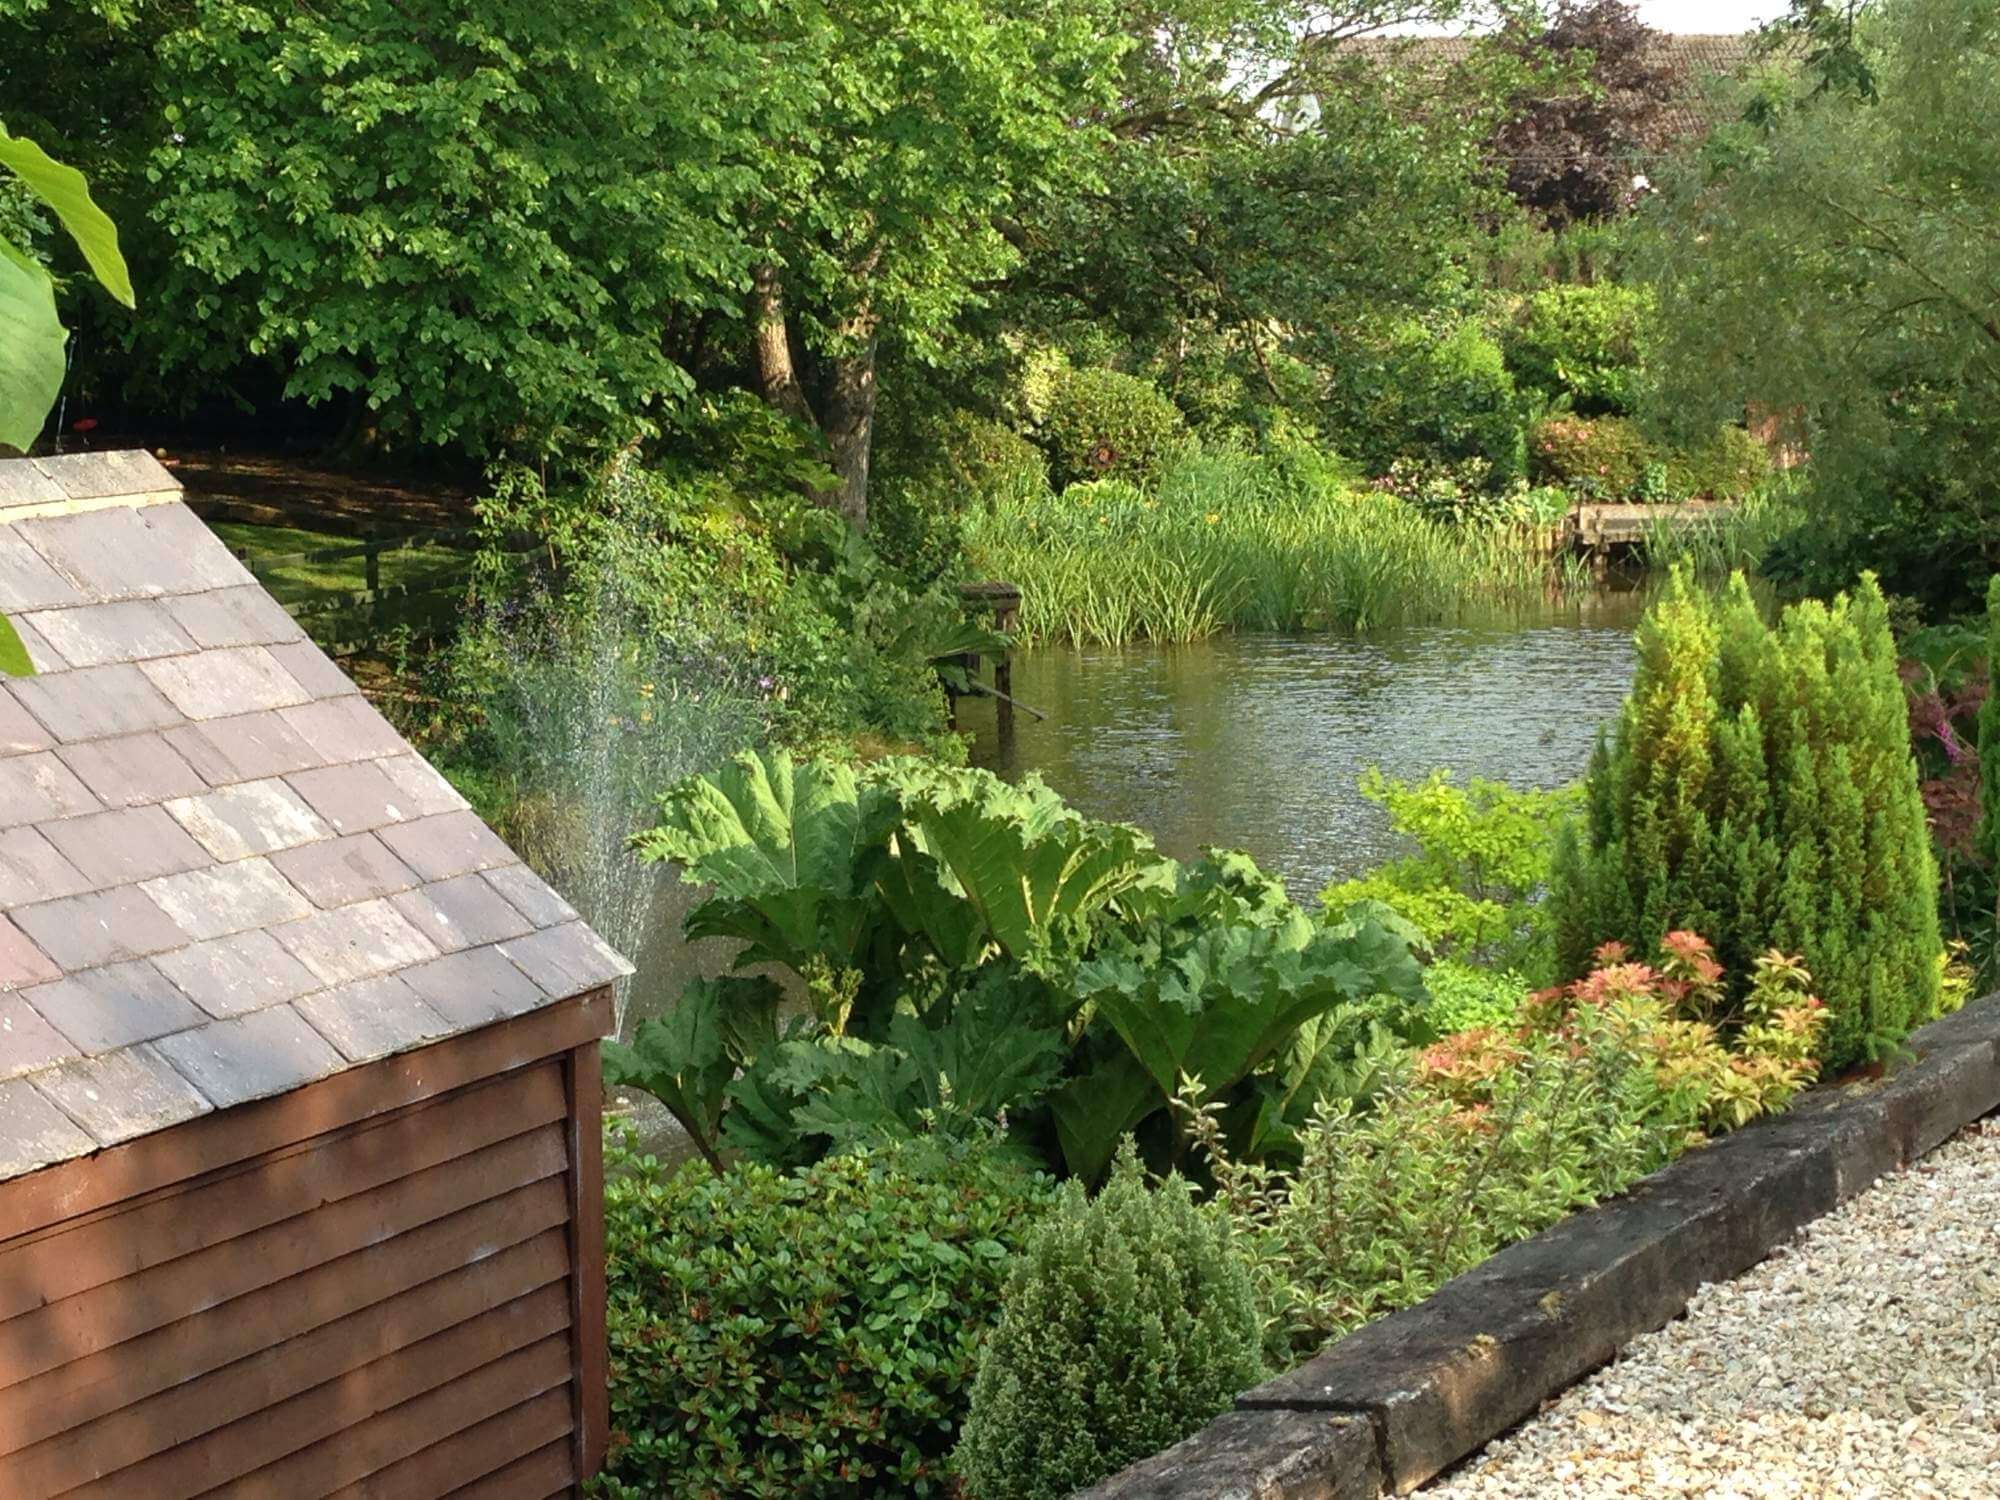 A very picturesque pond in Lyndhurst's garden 